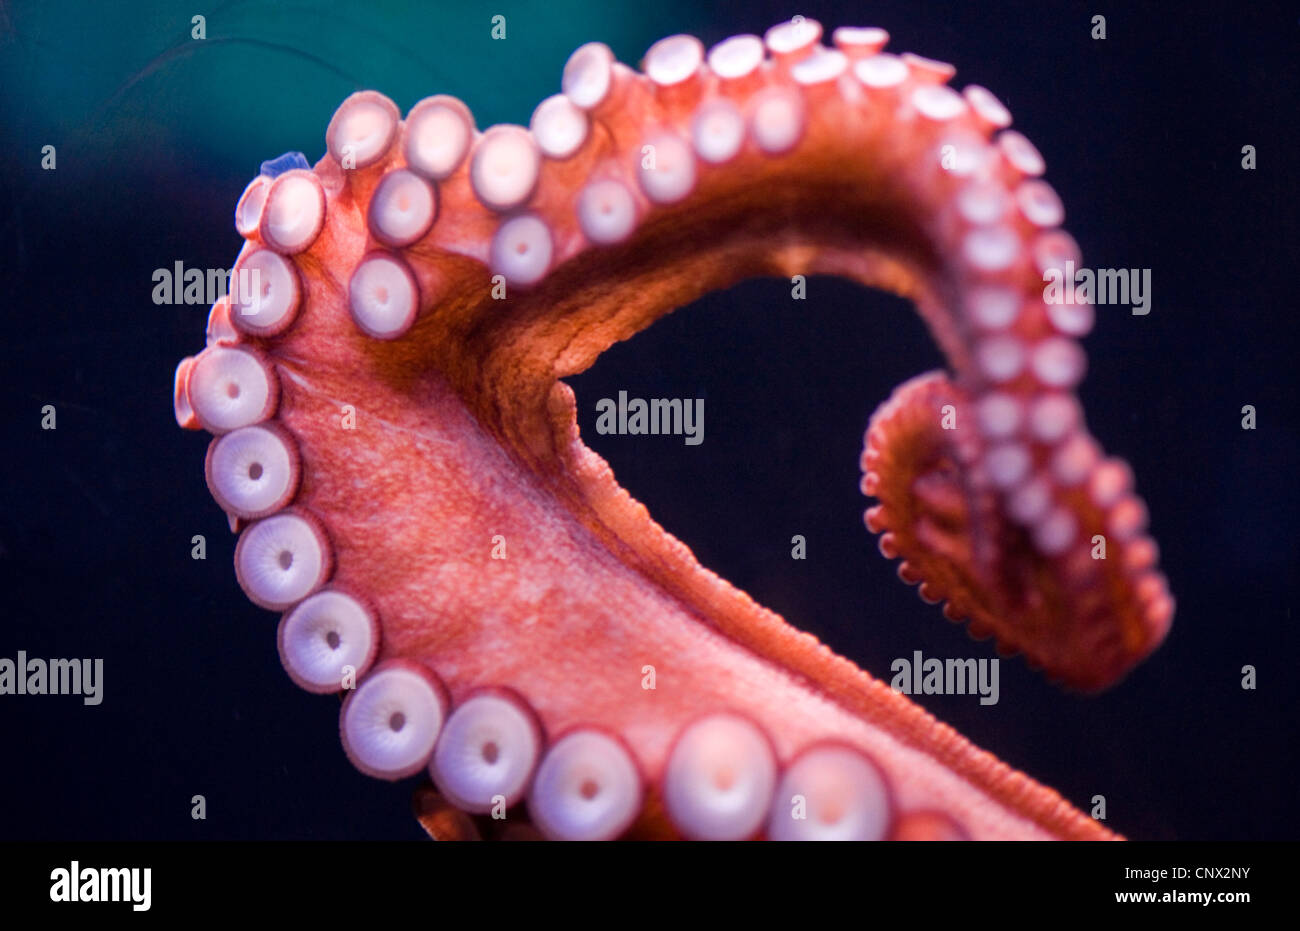 Poulpe commun, Octopus, Atlantique commun européen commun poulpe (Octopus vulgaris), le bras avec ventouses Banque D'Images